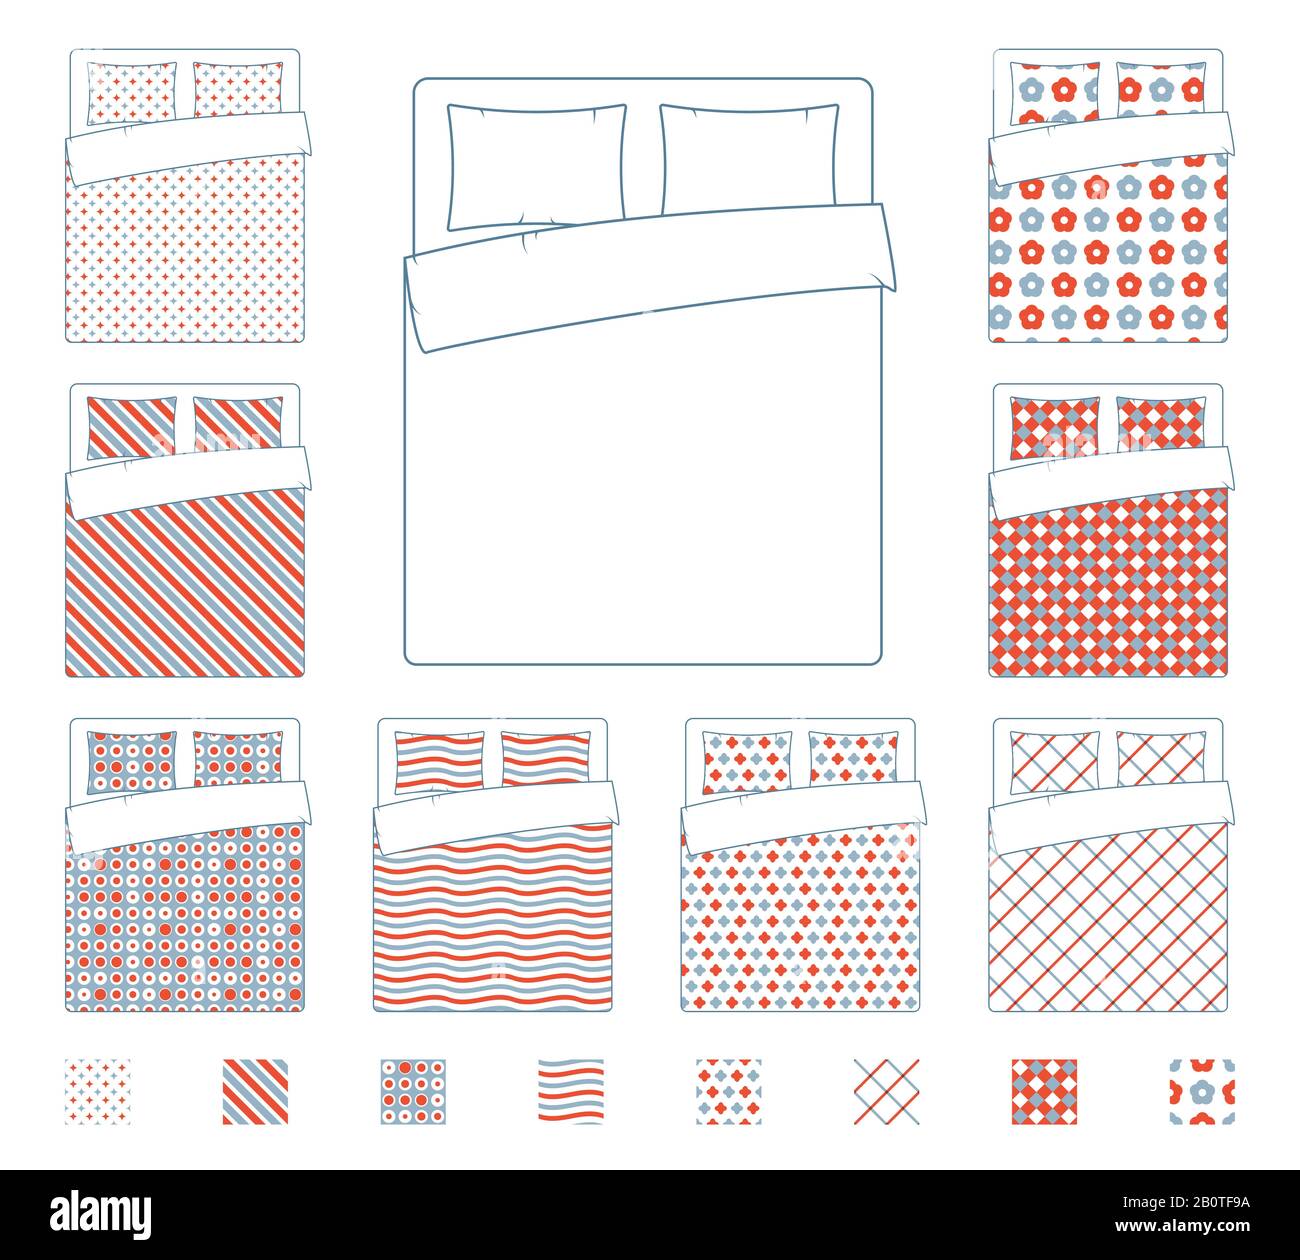 Bettwäsche und Bettwaren, Federvektor-Textil-Muster Vorlage. Decke mit Textilmuster, Abbildung des Stoffbedecktuchs für das Bett Stock Vektor